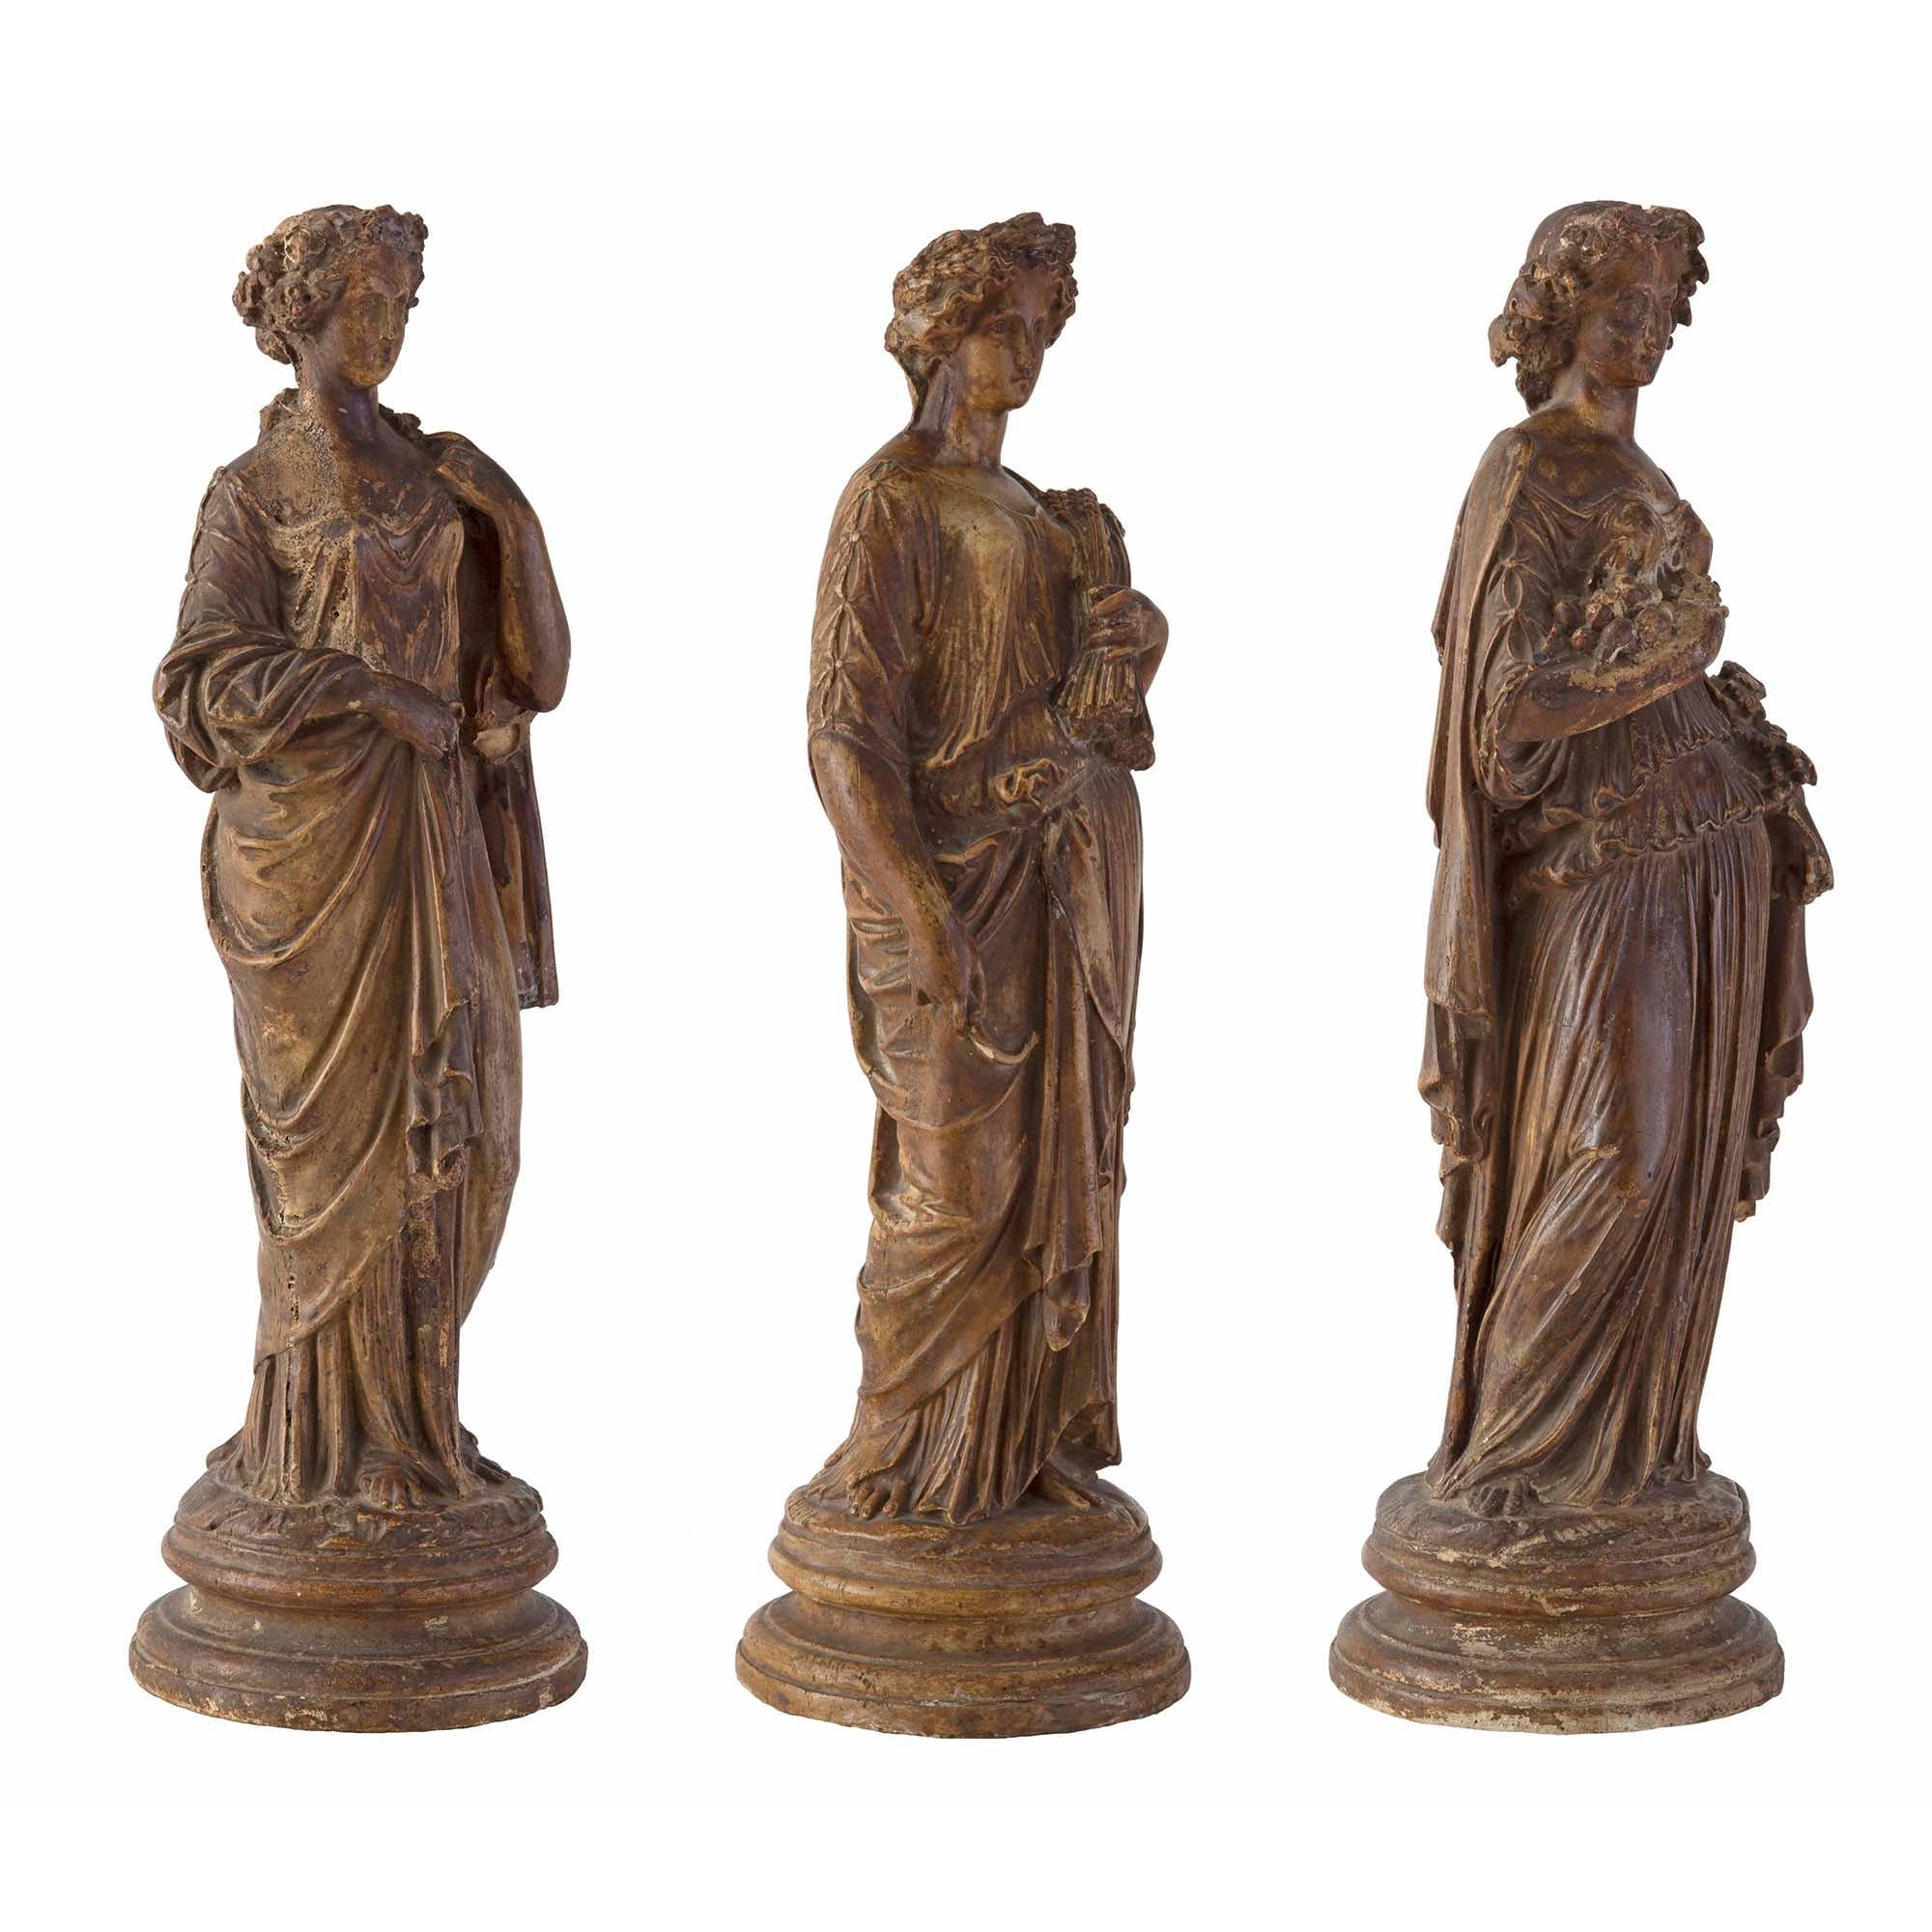 Un bel ensemble complet de trois statues de jeunes filles en terre cuite du début du XVIIIe siècle, de style néo-classique, signées C PIERI. Chaque statue, merveilleusement exécutée, est surélevée par une base circulaire mouchetée. Les jeunes filles